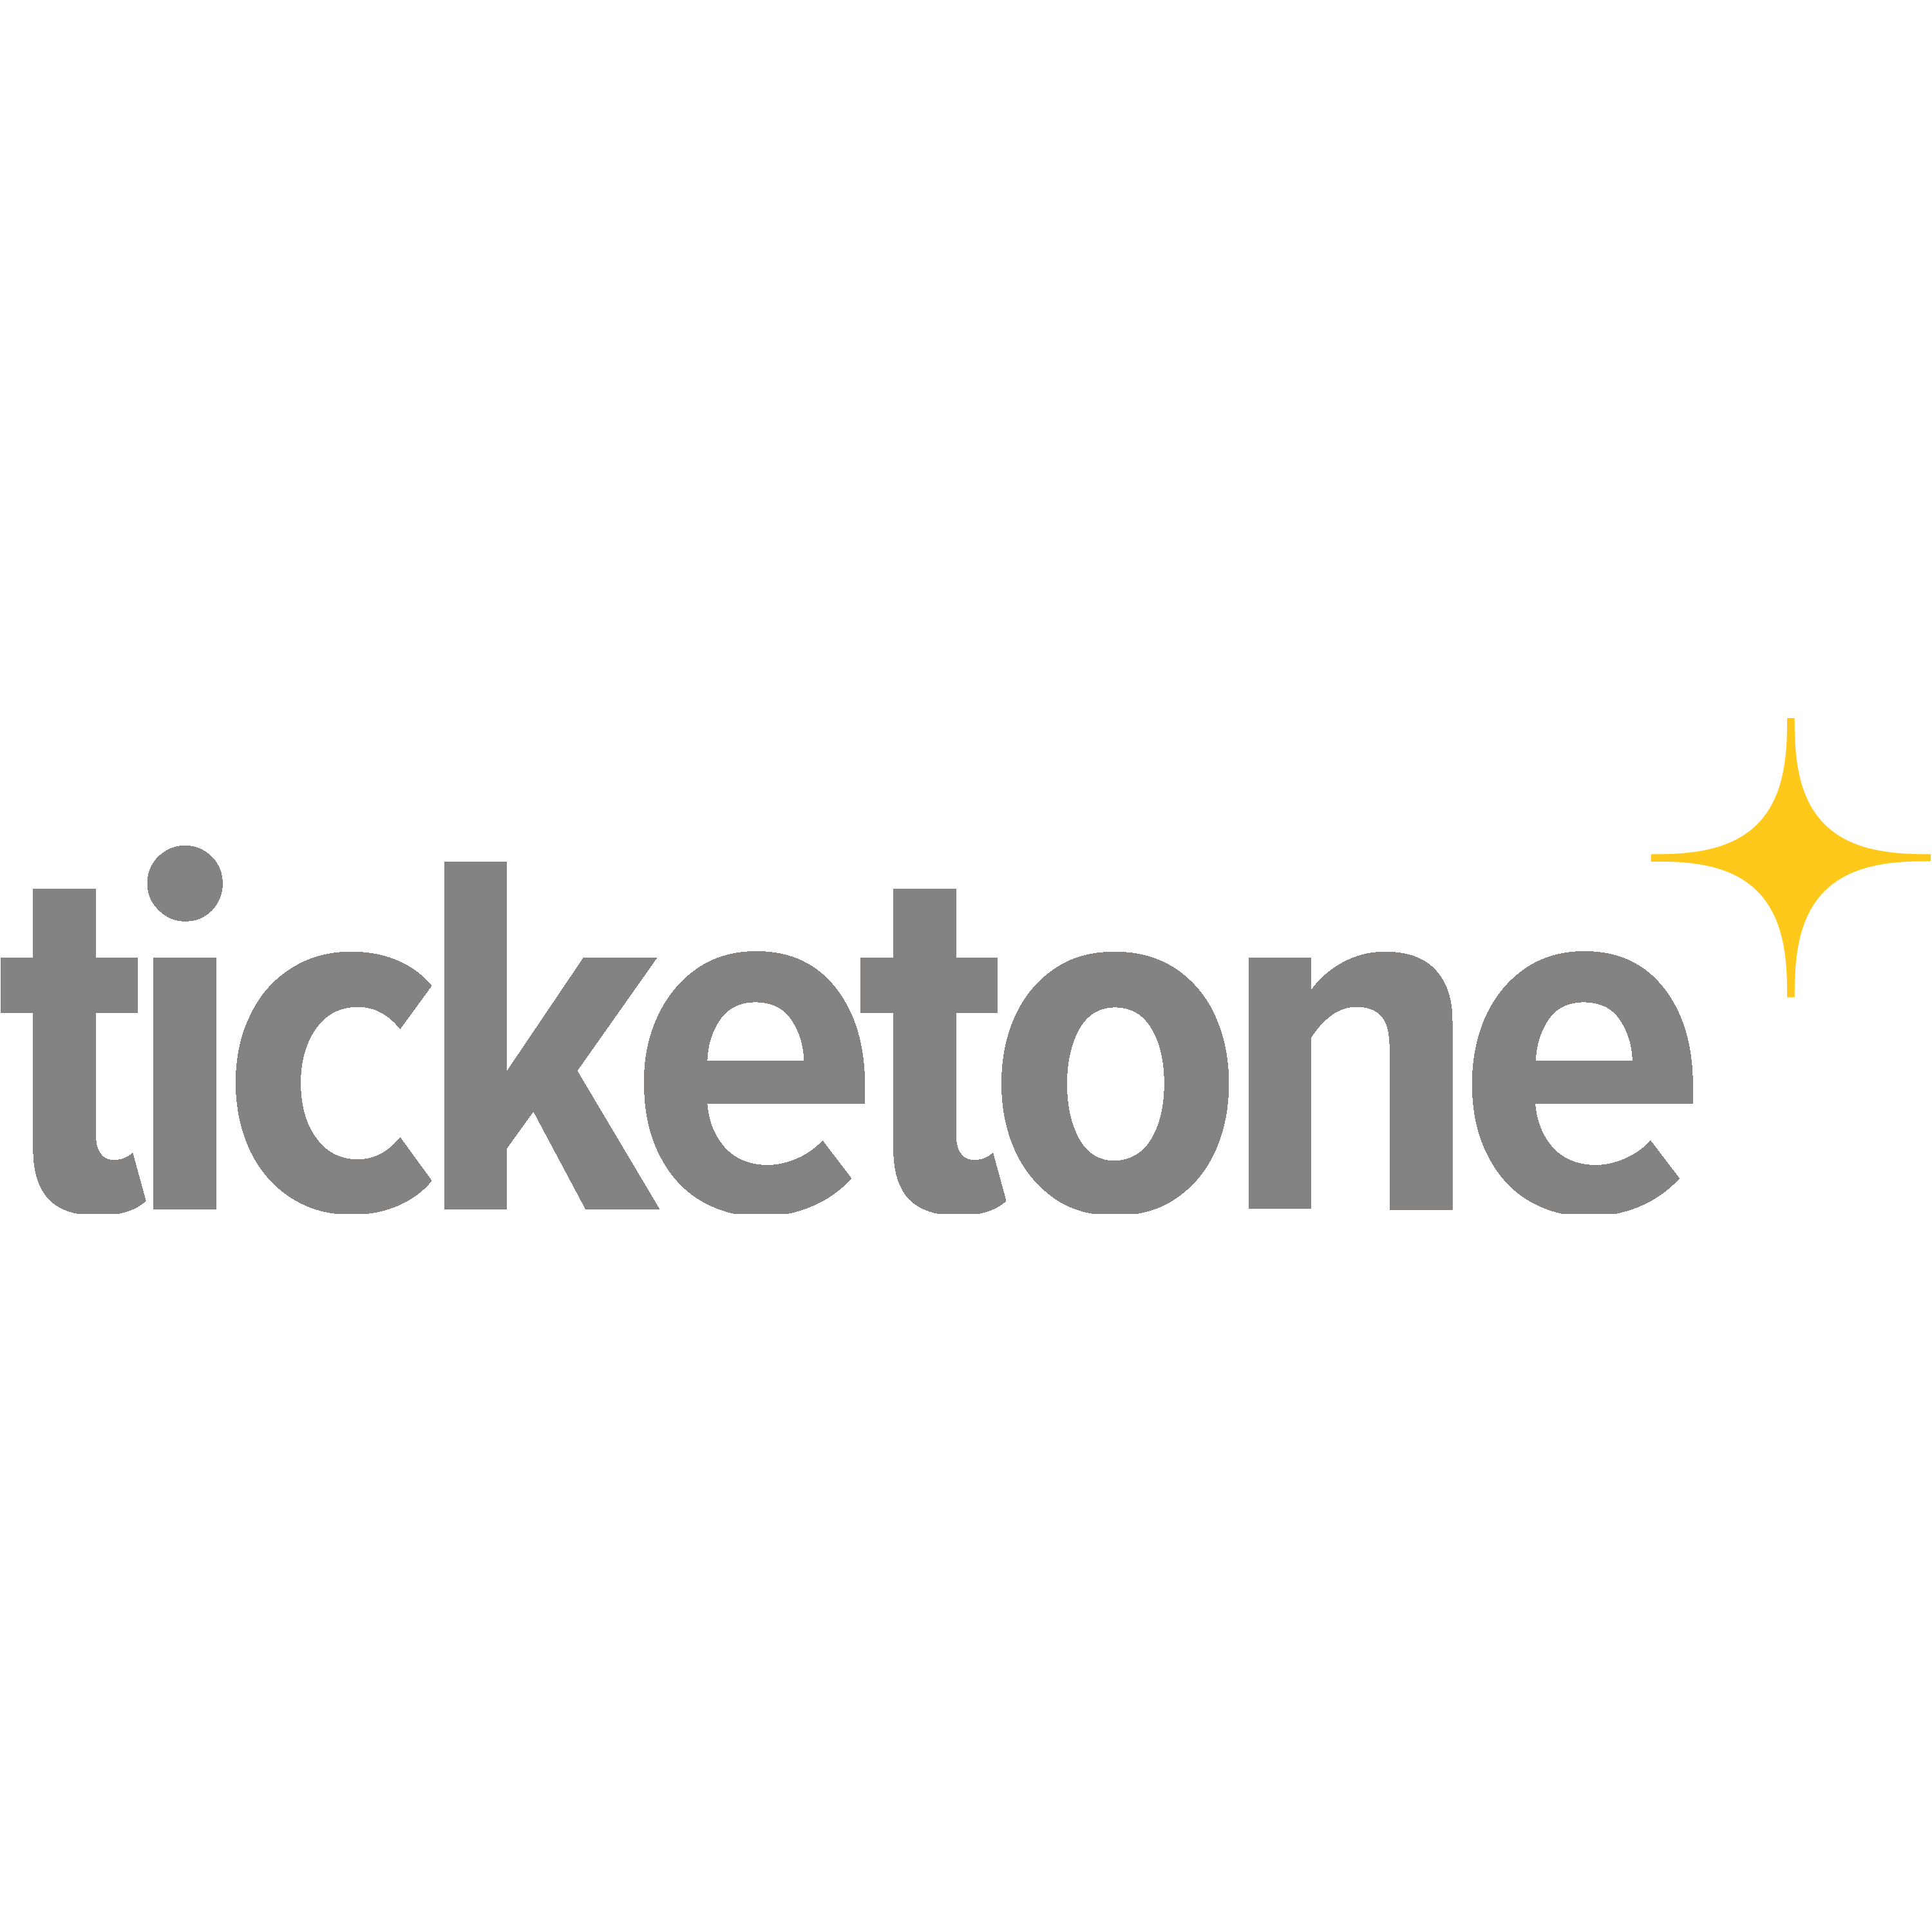 Ticketone Logo  Transparent Photo